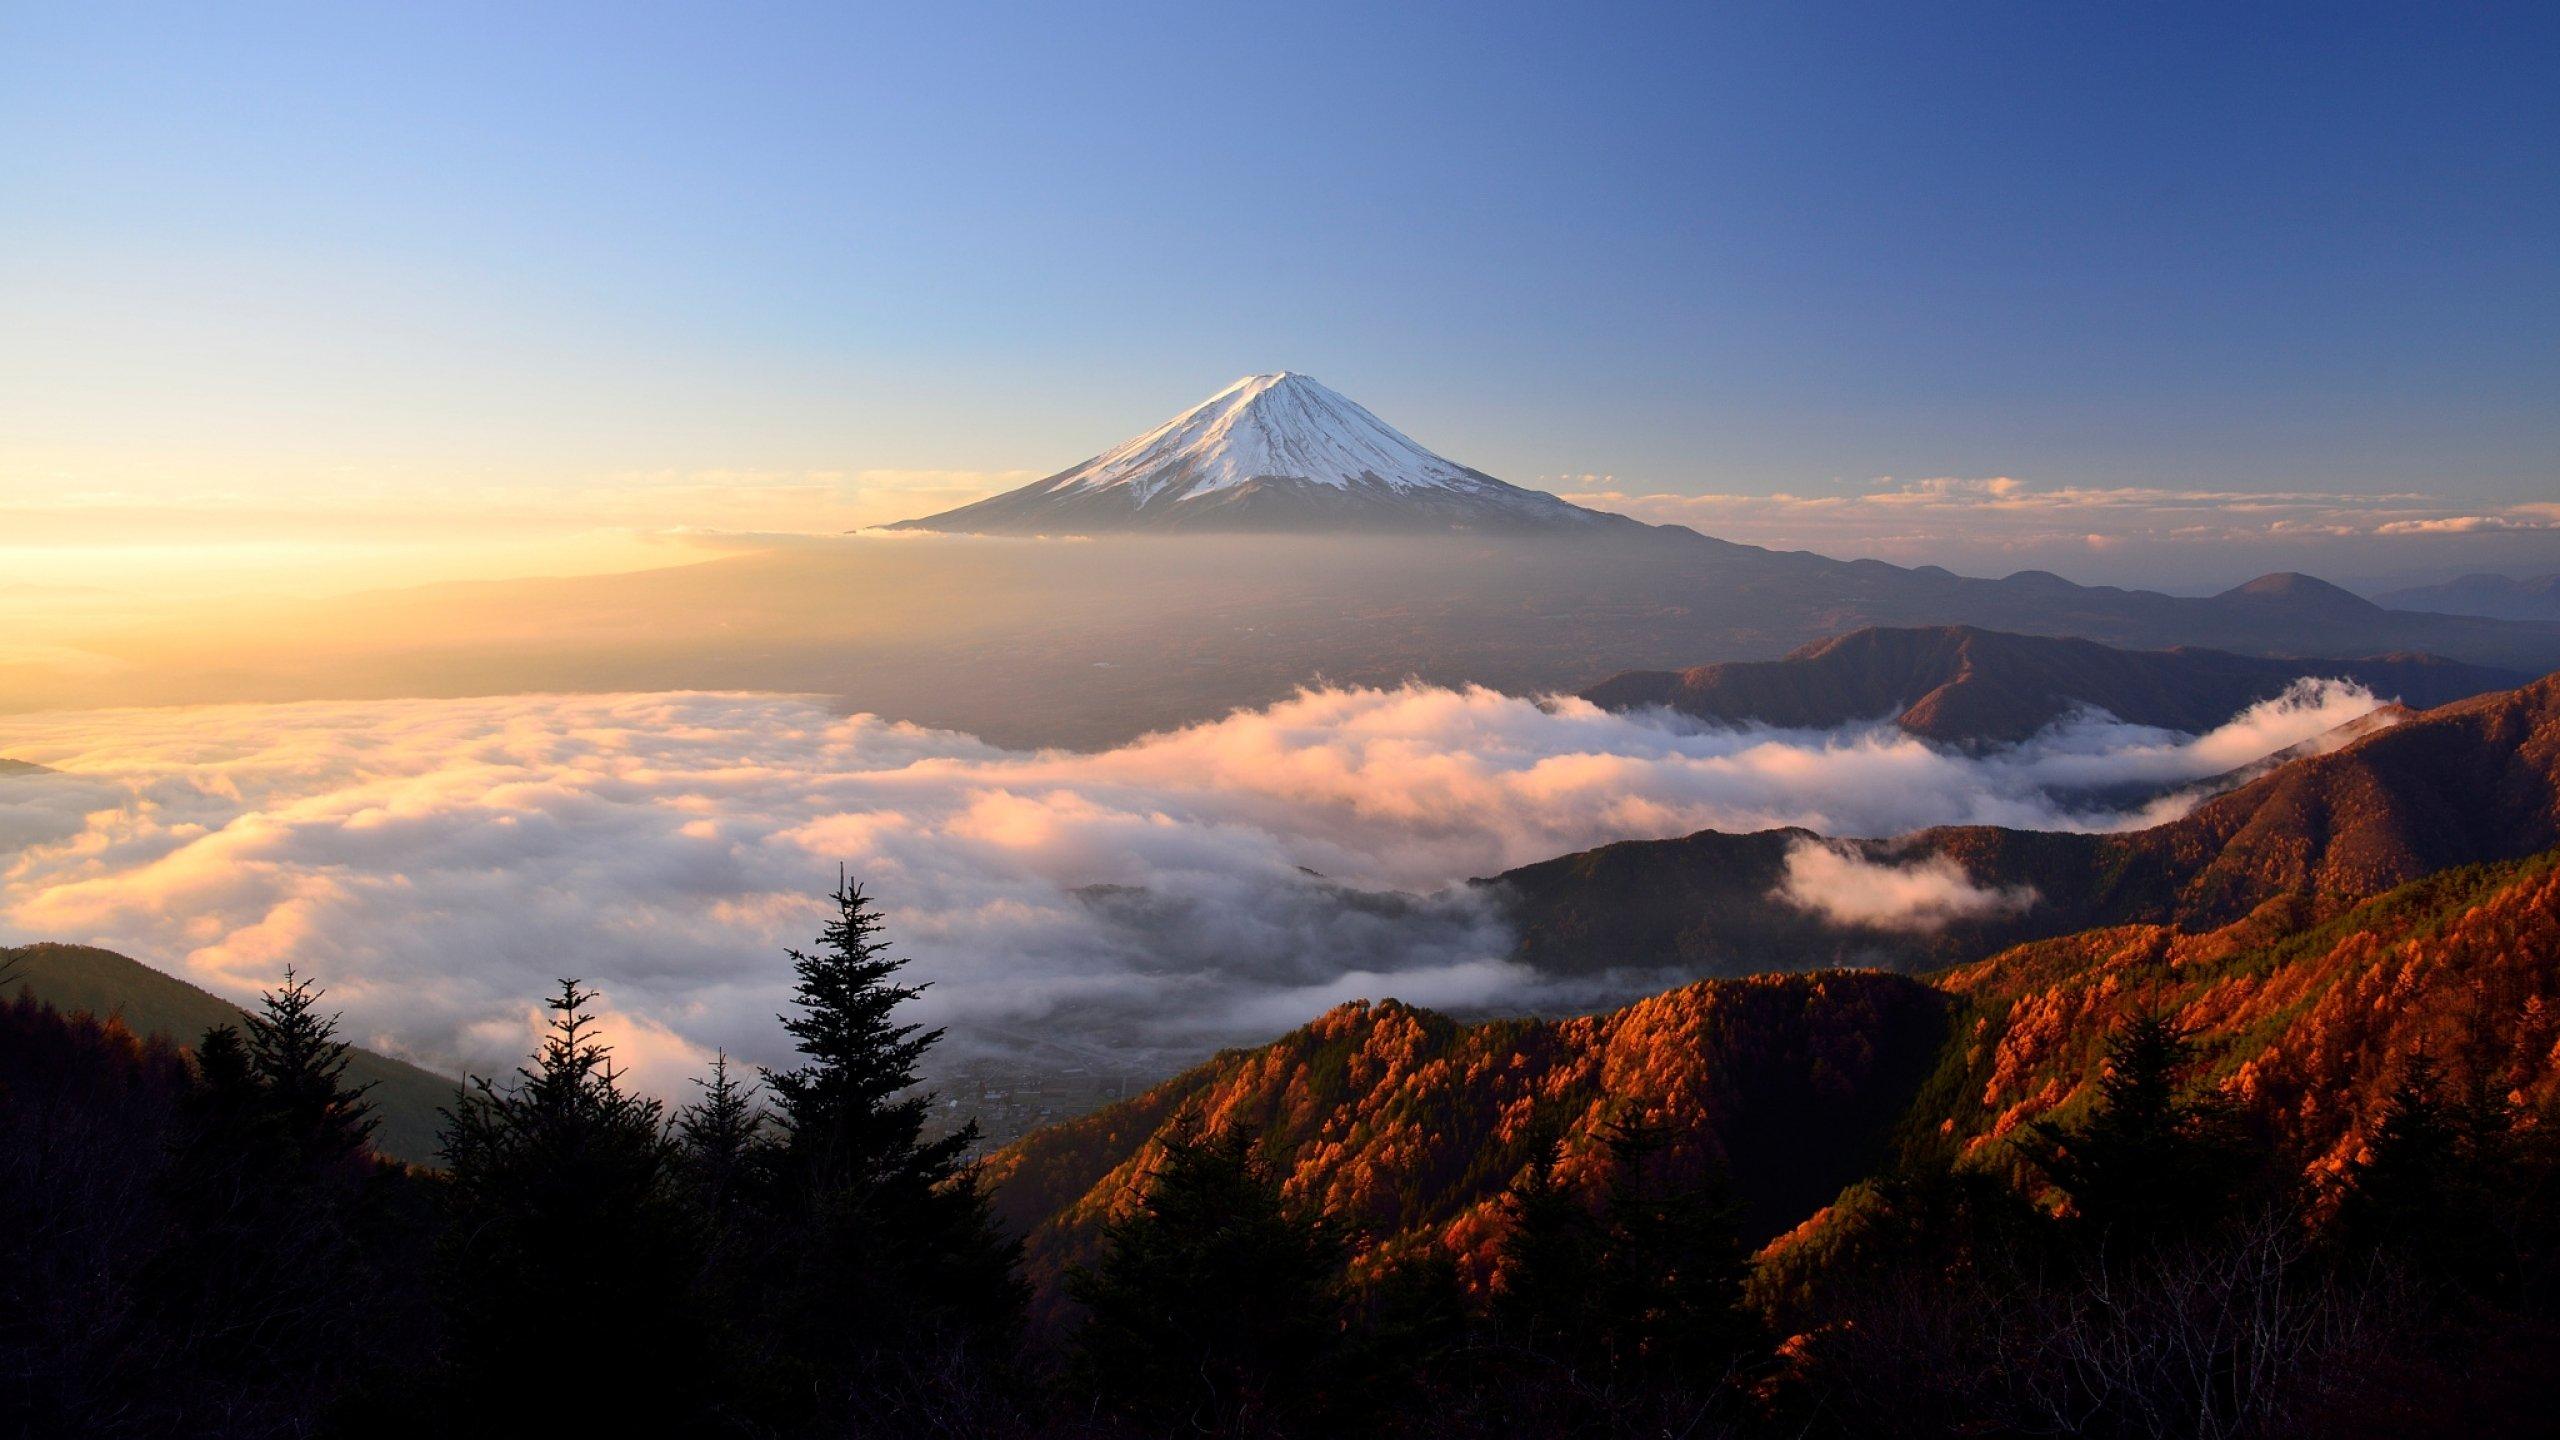 HD Mount Fuji Japan Wallpaper